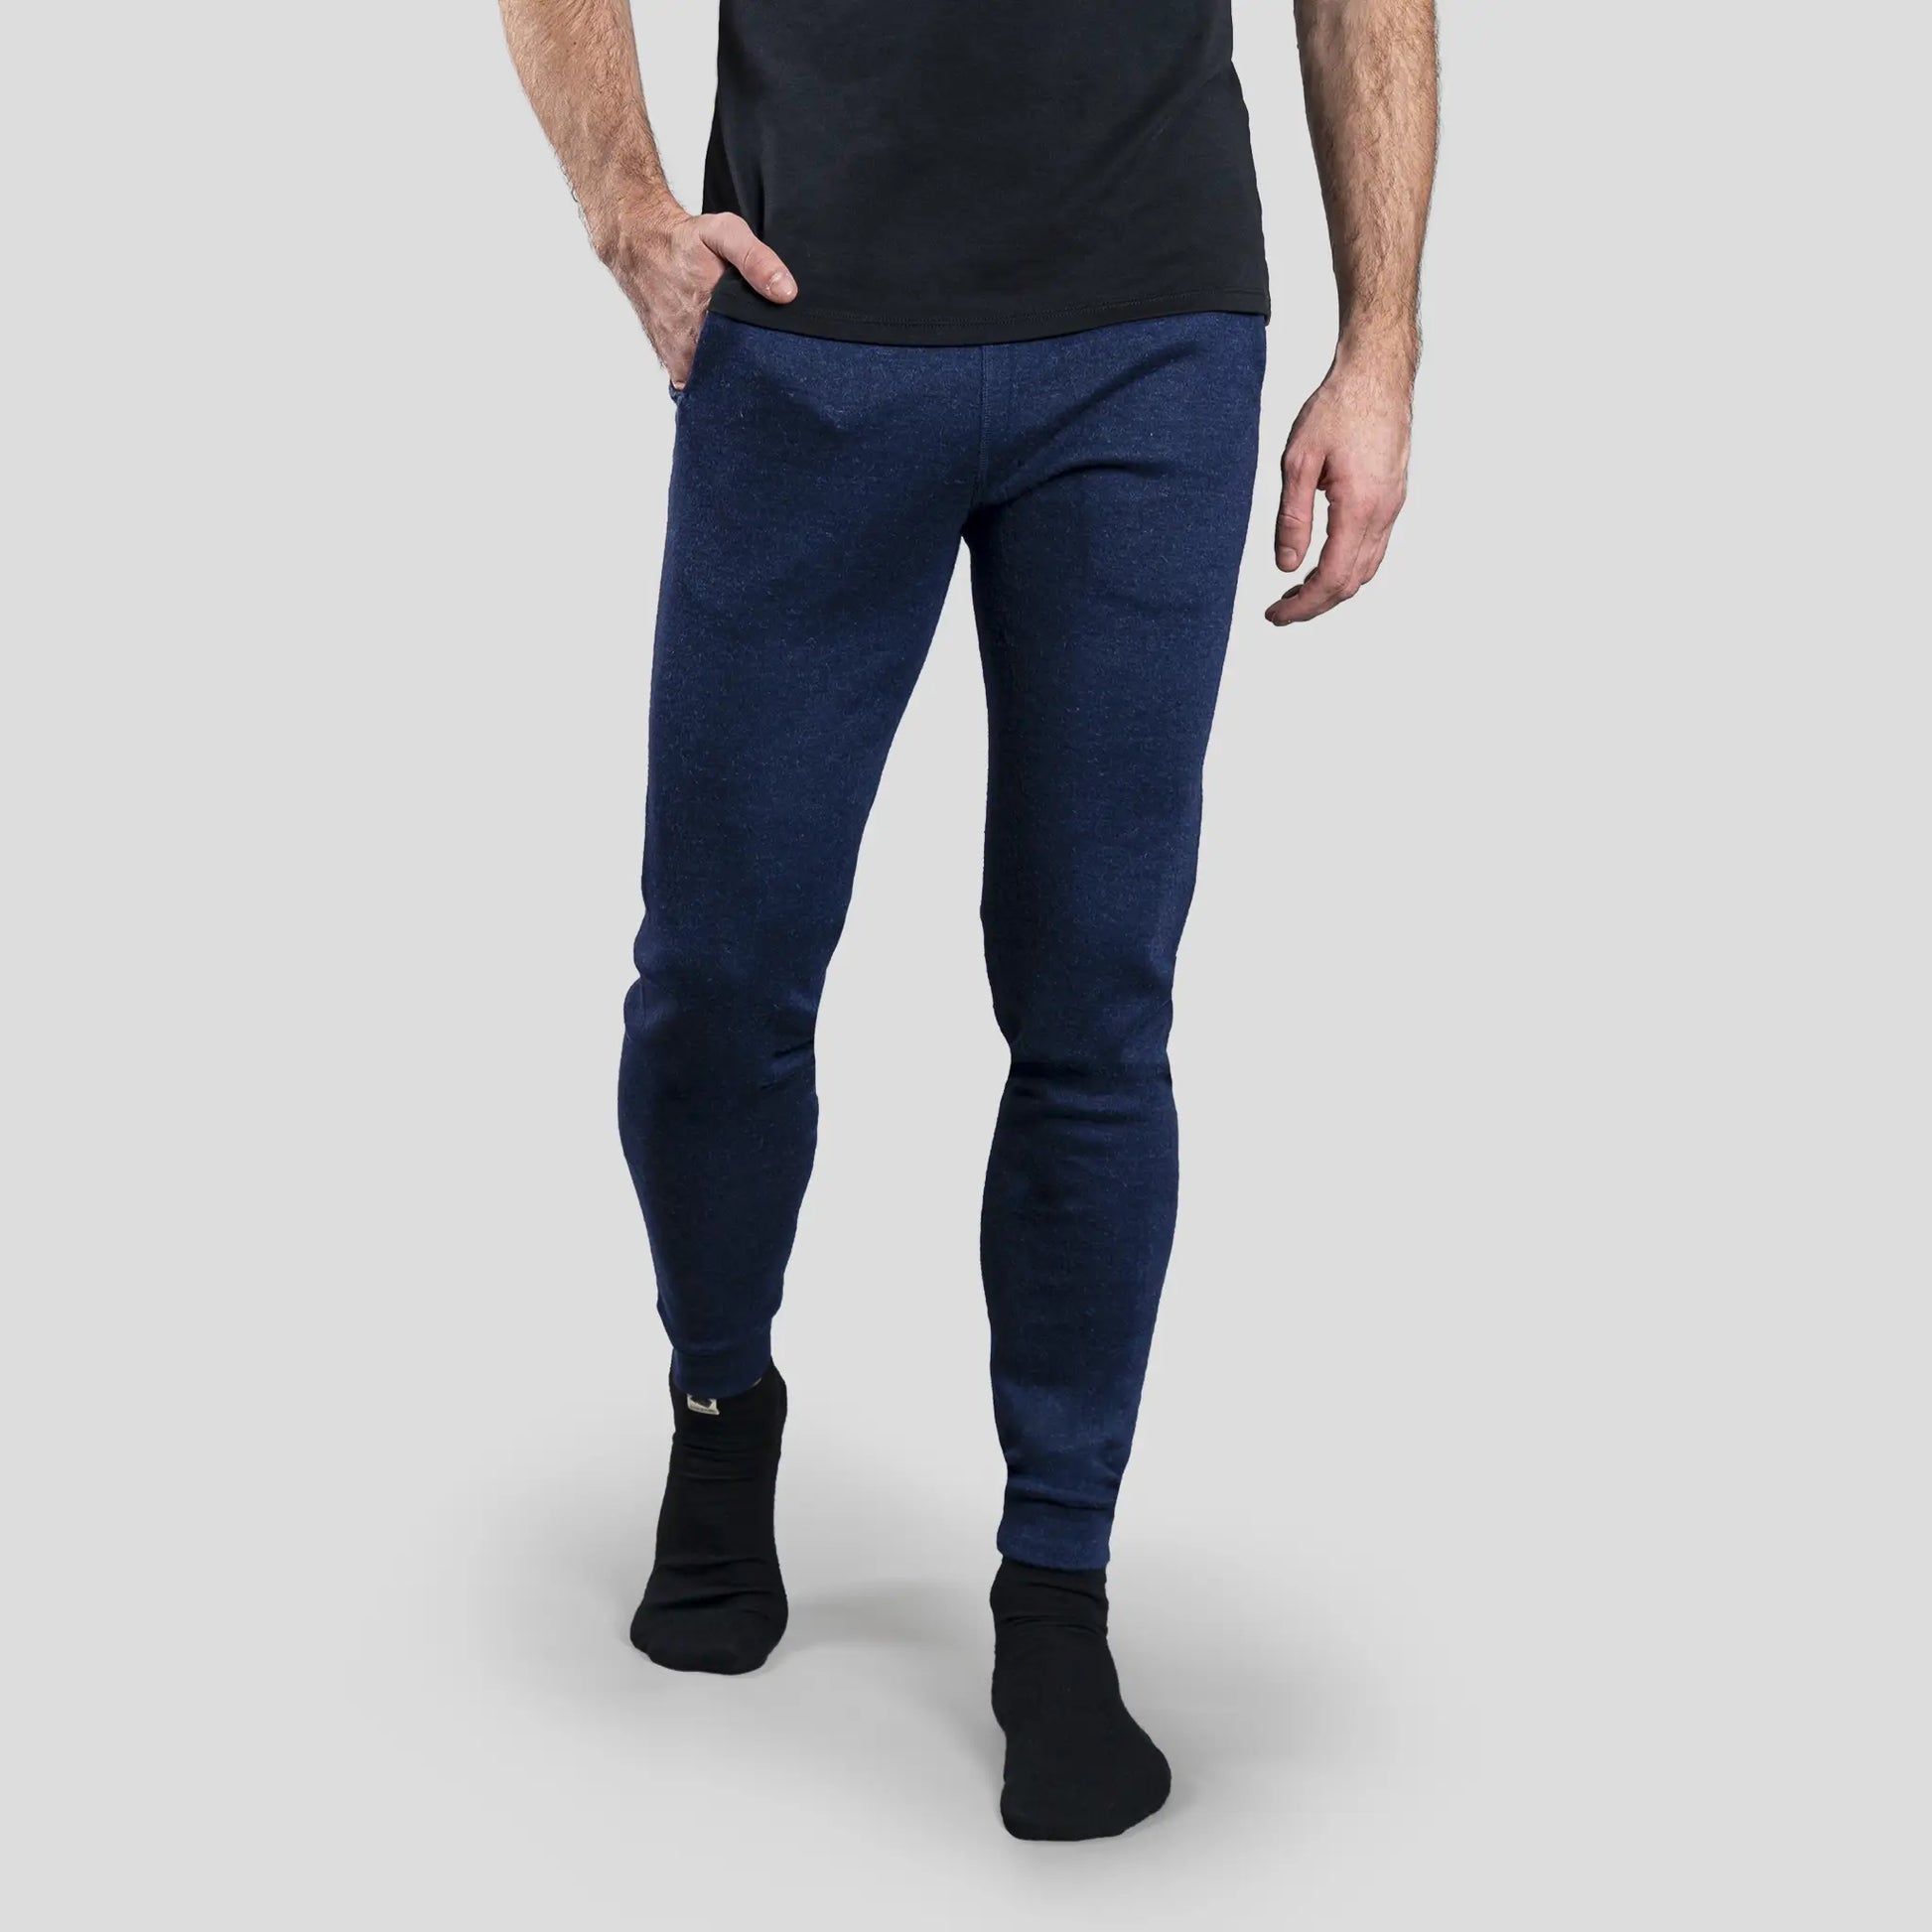 mens plastic free sweatpants color navy blue